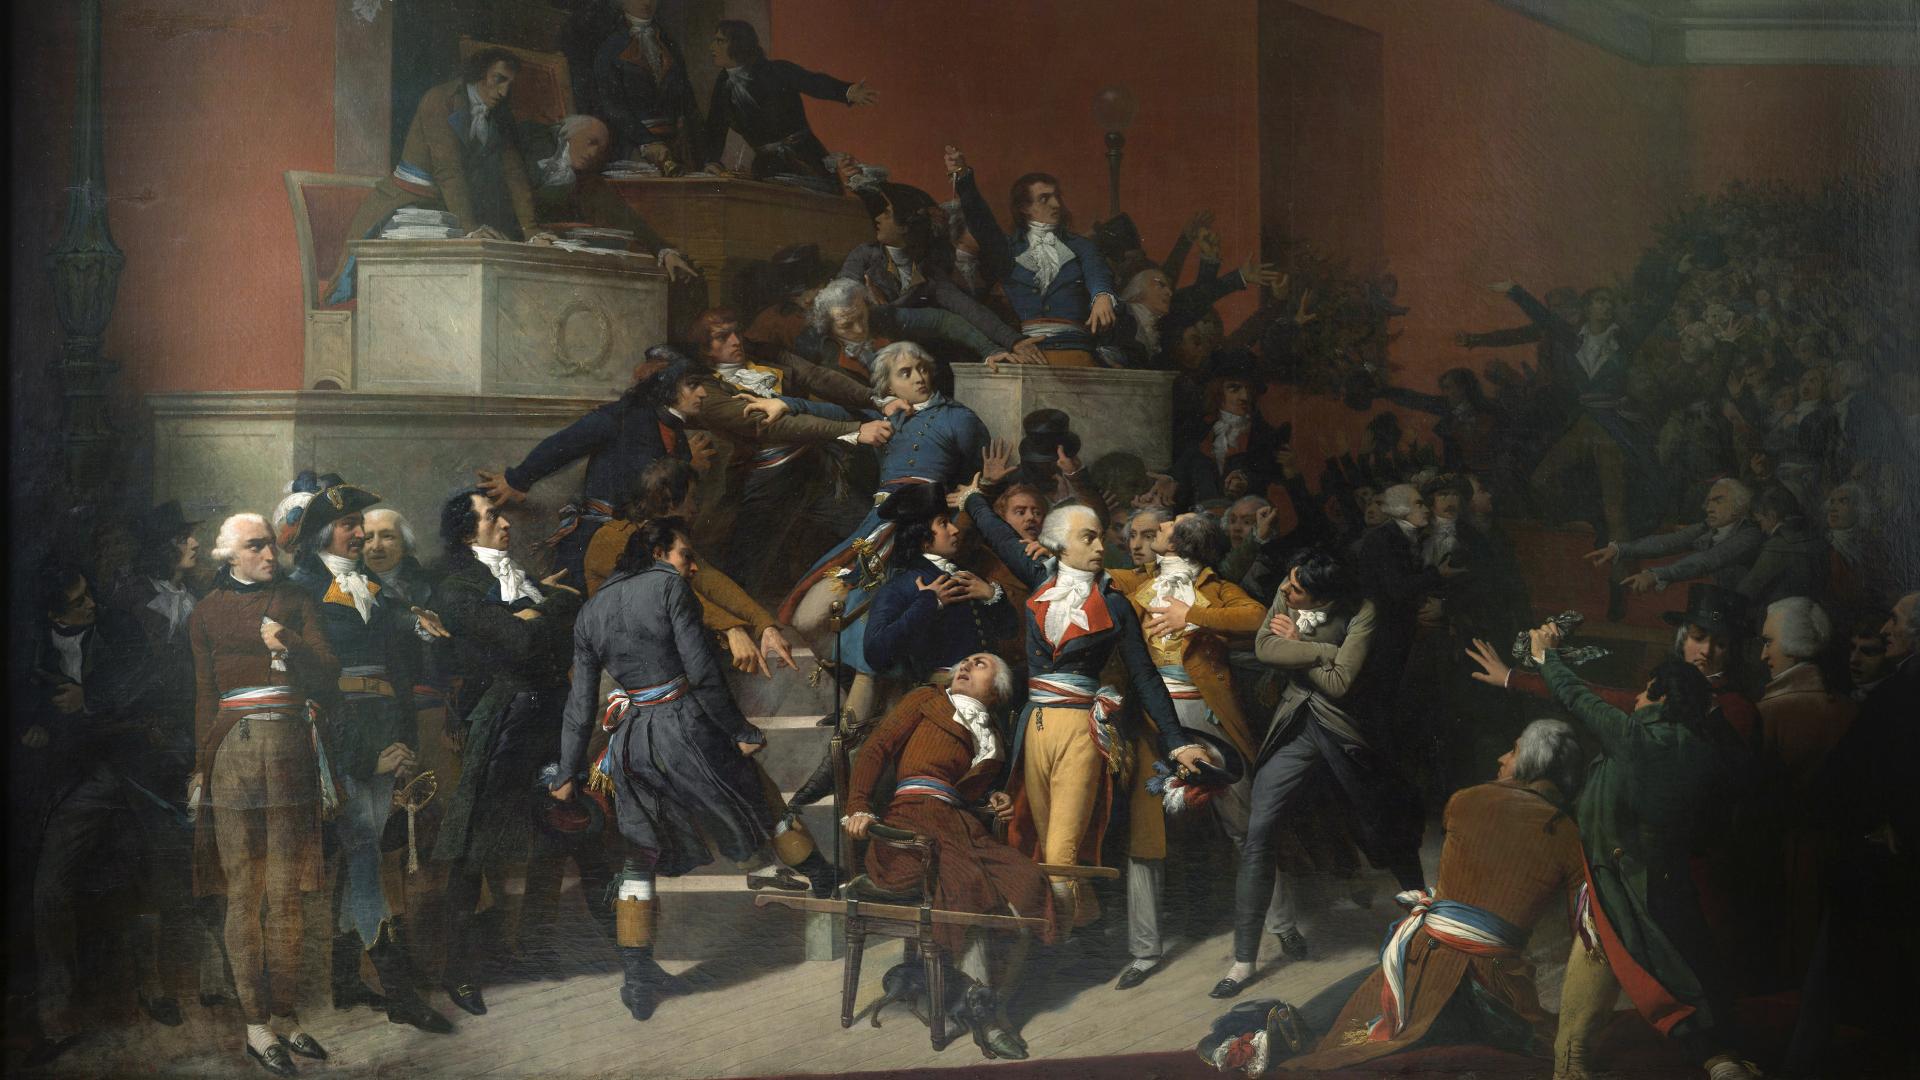 Pintura en la que se representa una asamblea de hombres con vestimentas del siglo XVIII